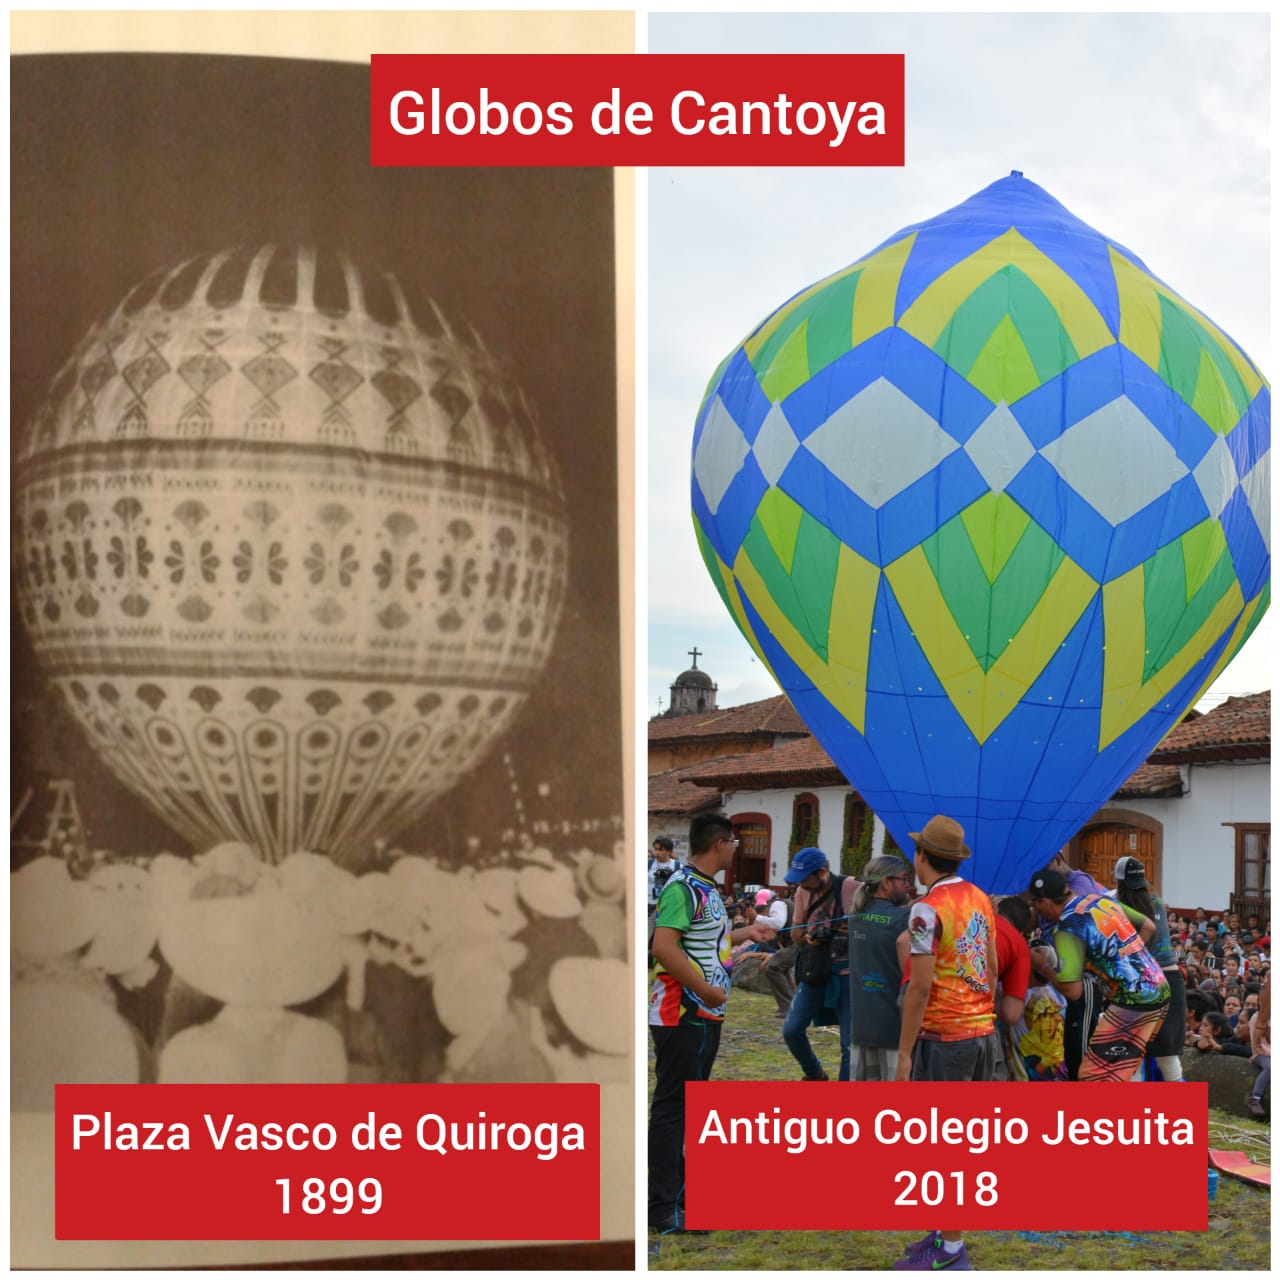 Globos de Cantoya en Pátzcuaro, una tradición que data del siglo XIX